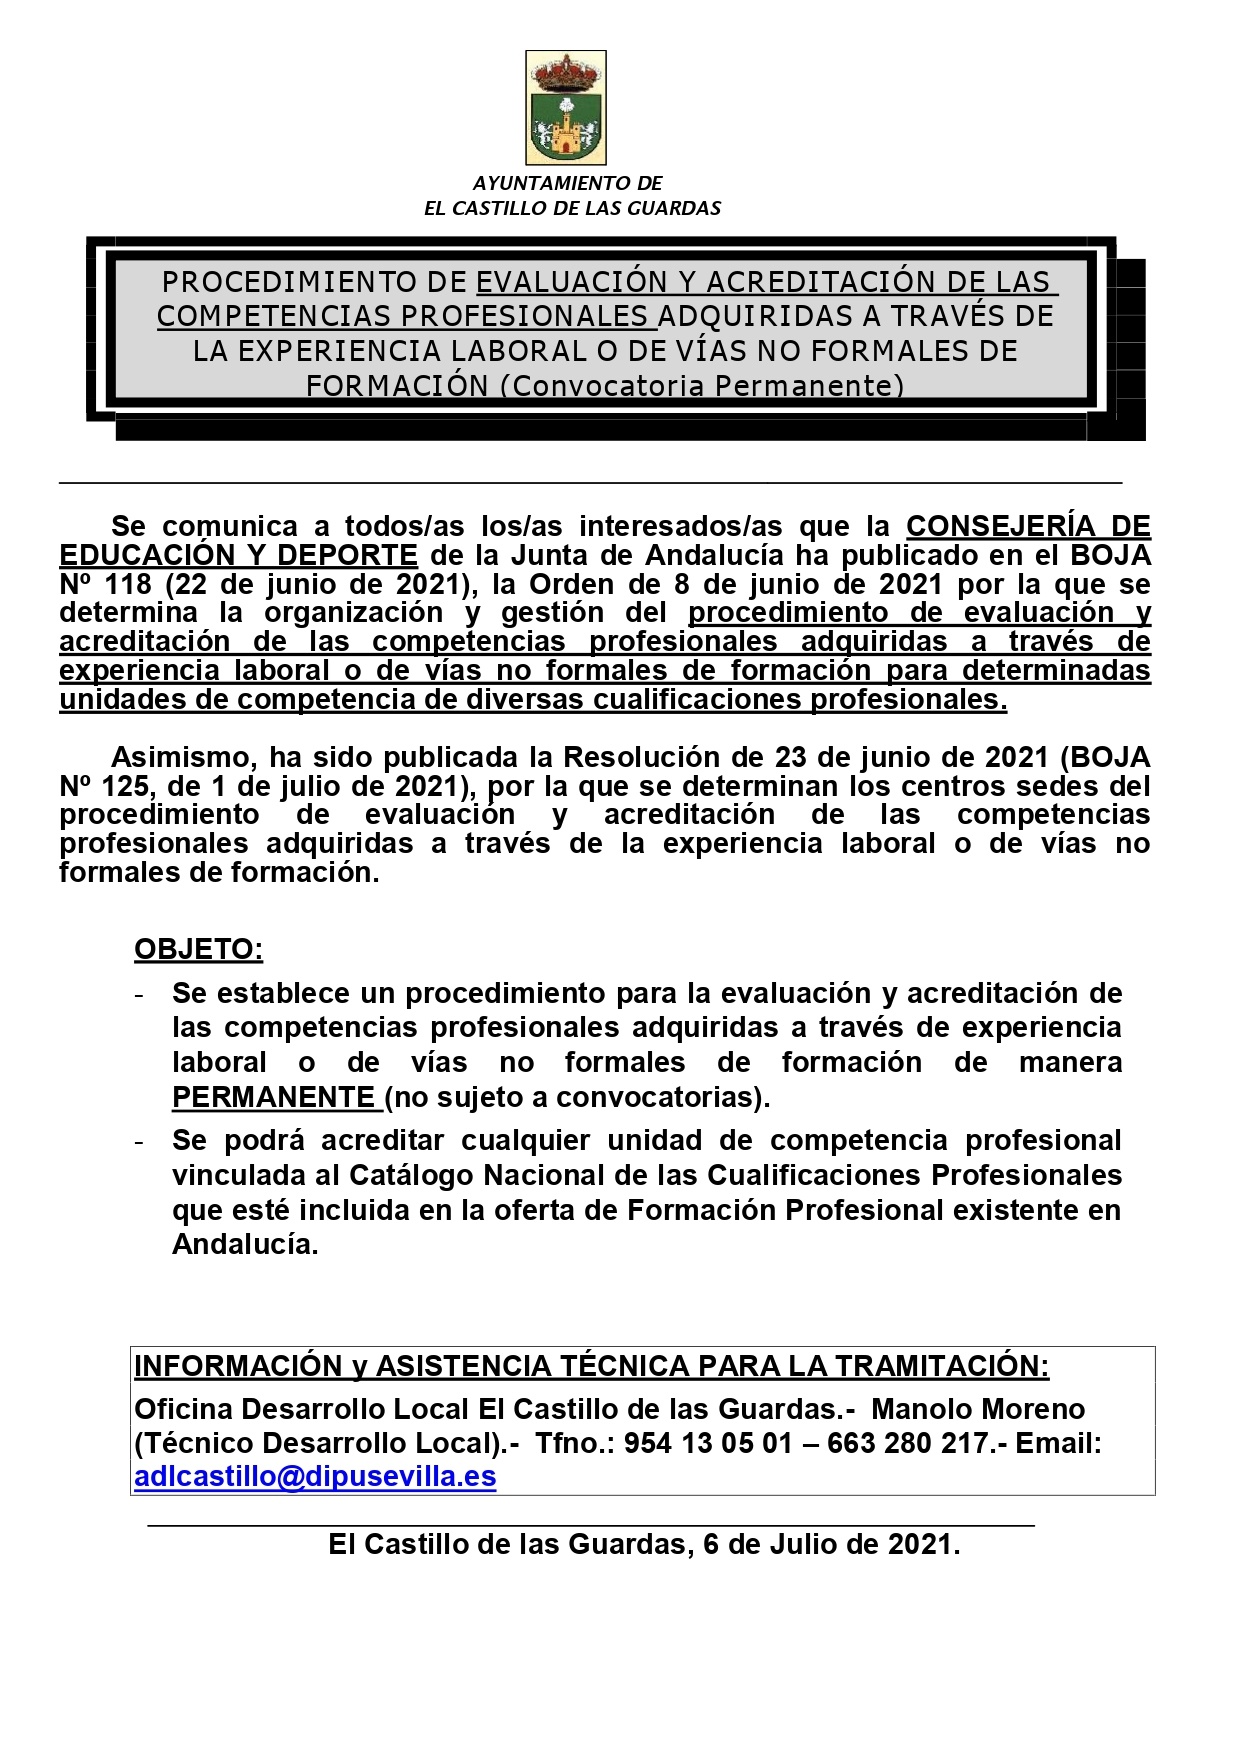 Cartel Acredita Competencias Profesionales Permanente_page-0001